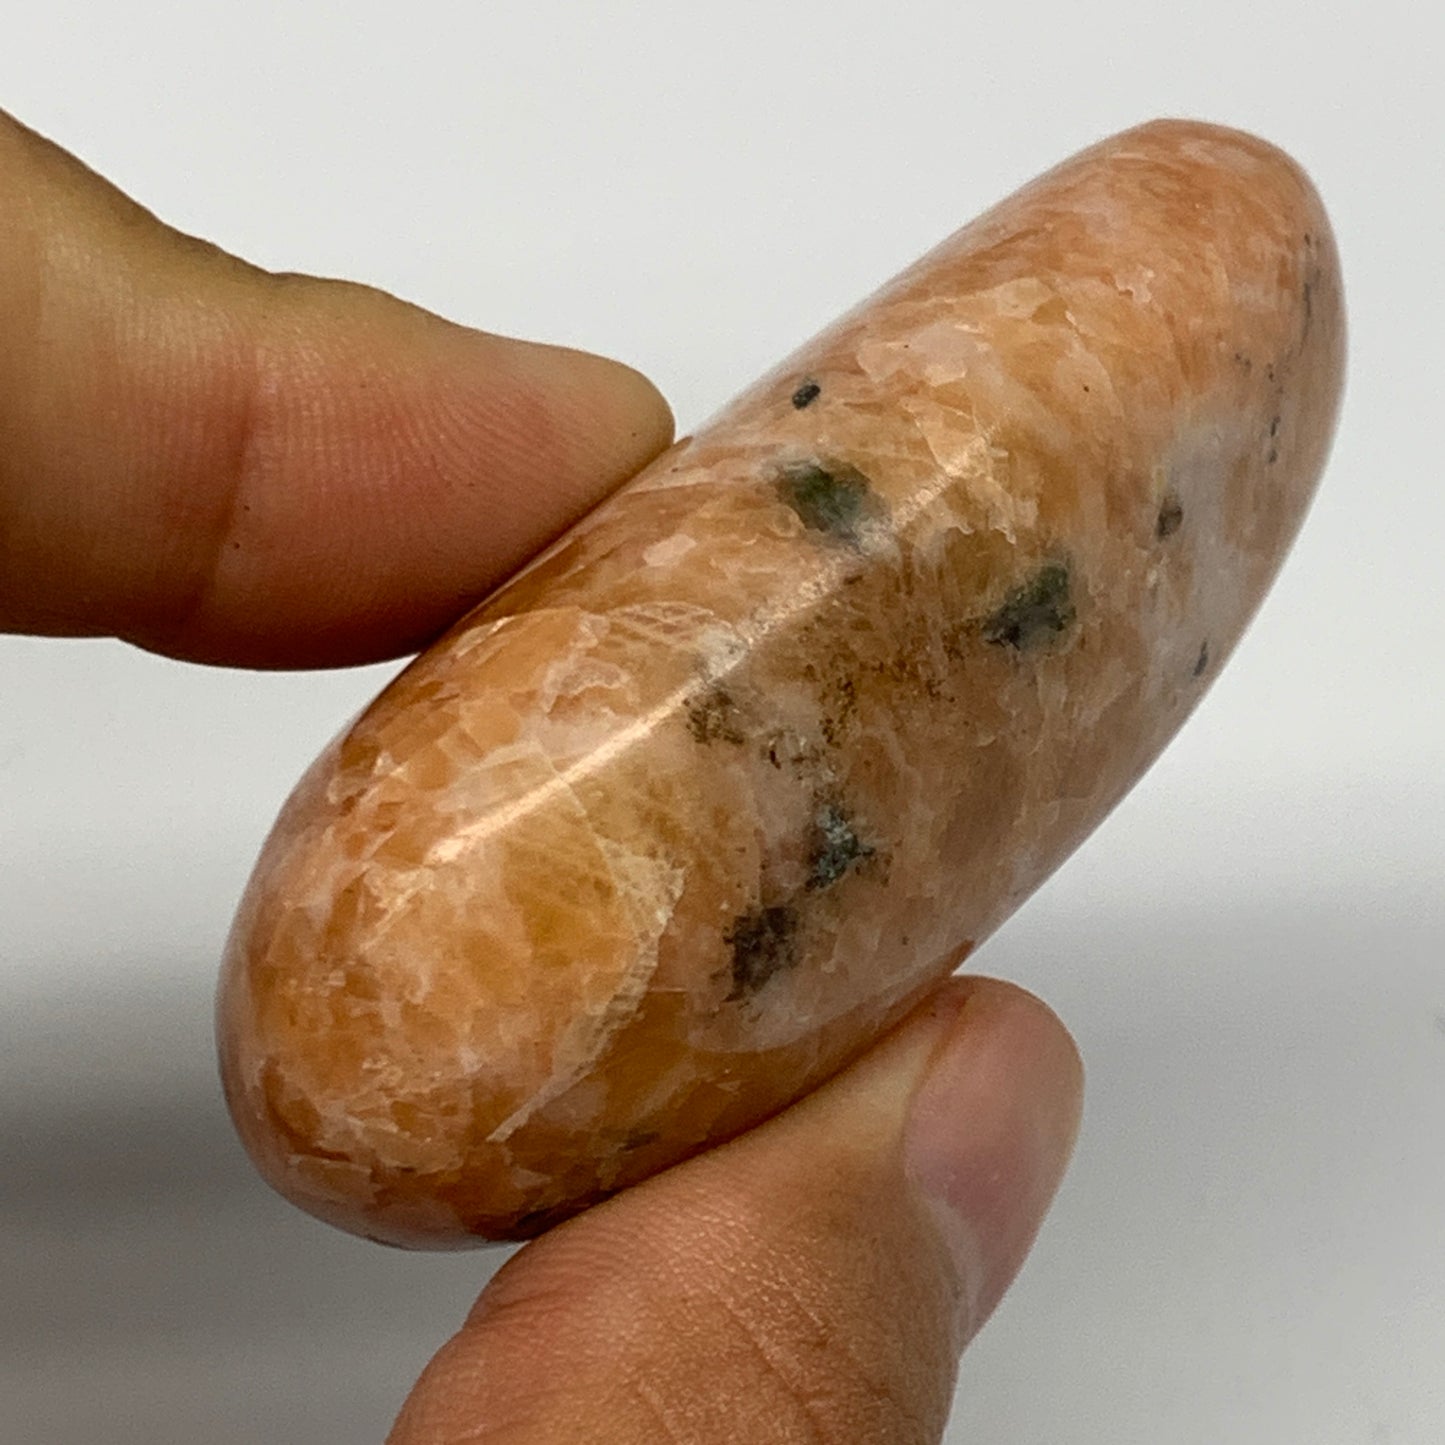 75.4g, 2.4"x1.4"x0.9", Orange Calcite Palm-Stone Crystal Polished Reiki, B16061